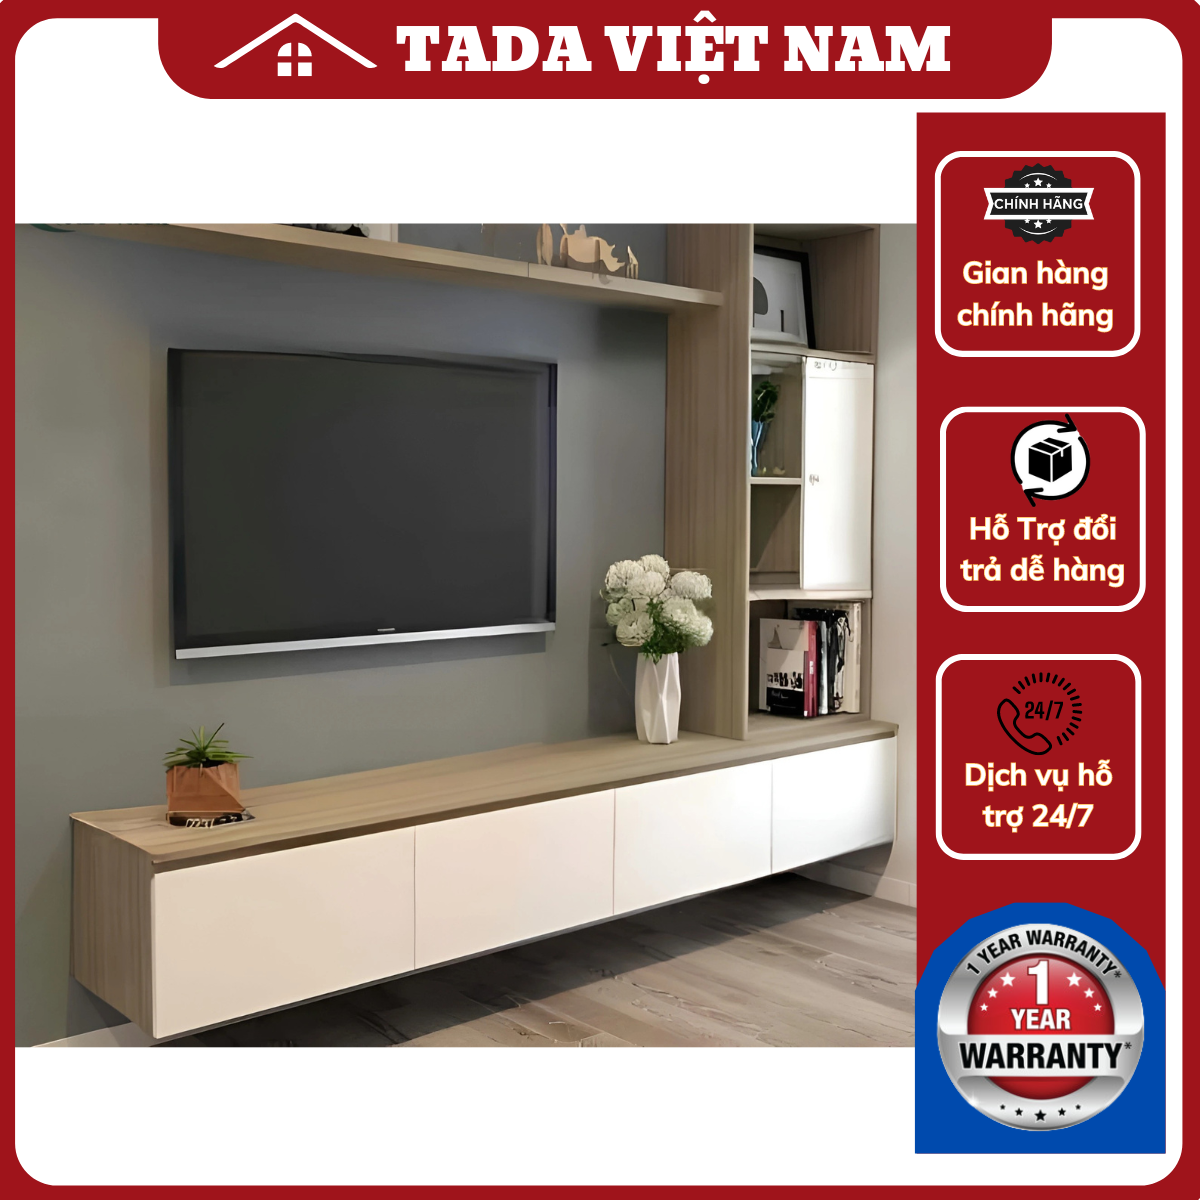 Kệ tivi treo tường đa năng, thương hiệu TADA Việt Nam, TDTV91